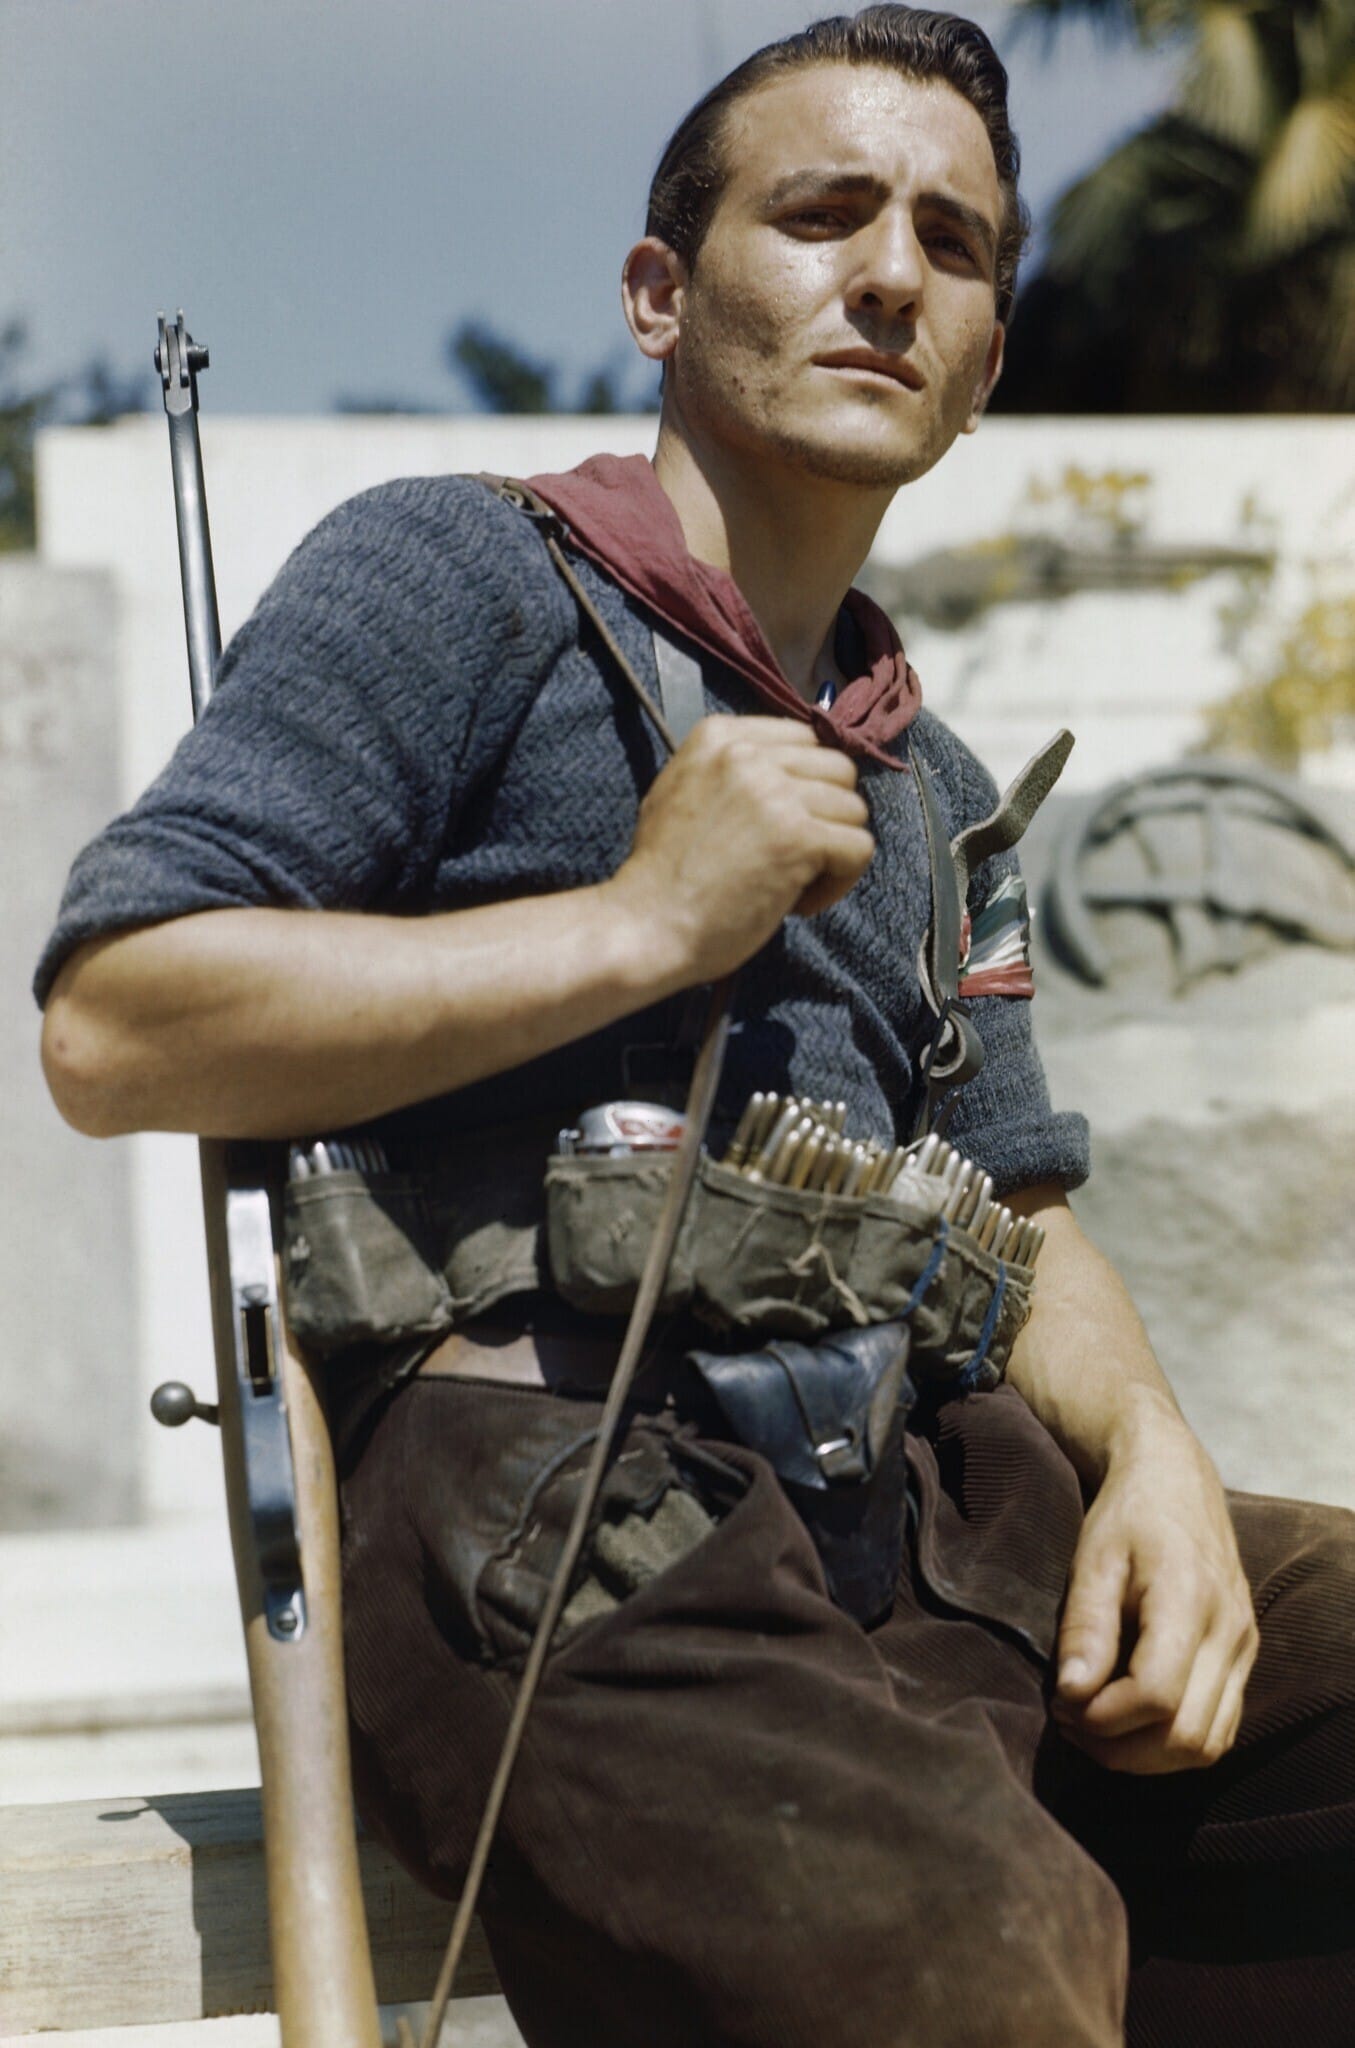 פרטיזן איטלקי בפירנצה, אוגוסט 1944 (צילום: רשות הציבור)